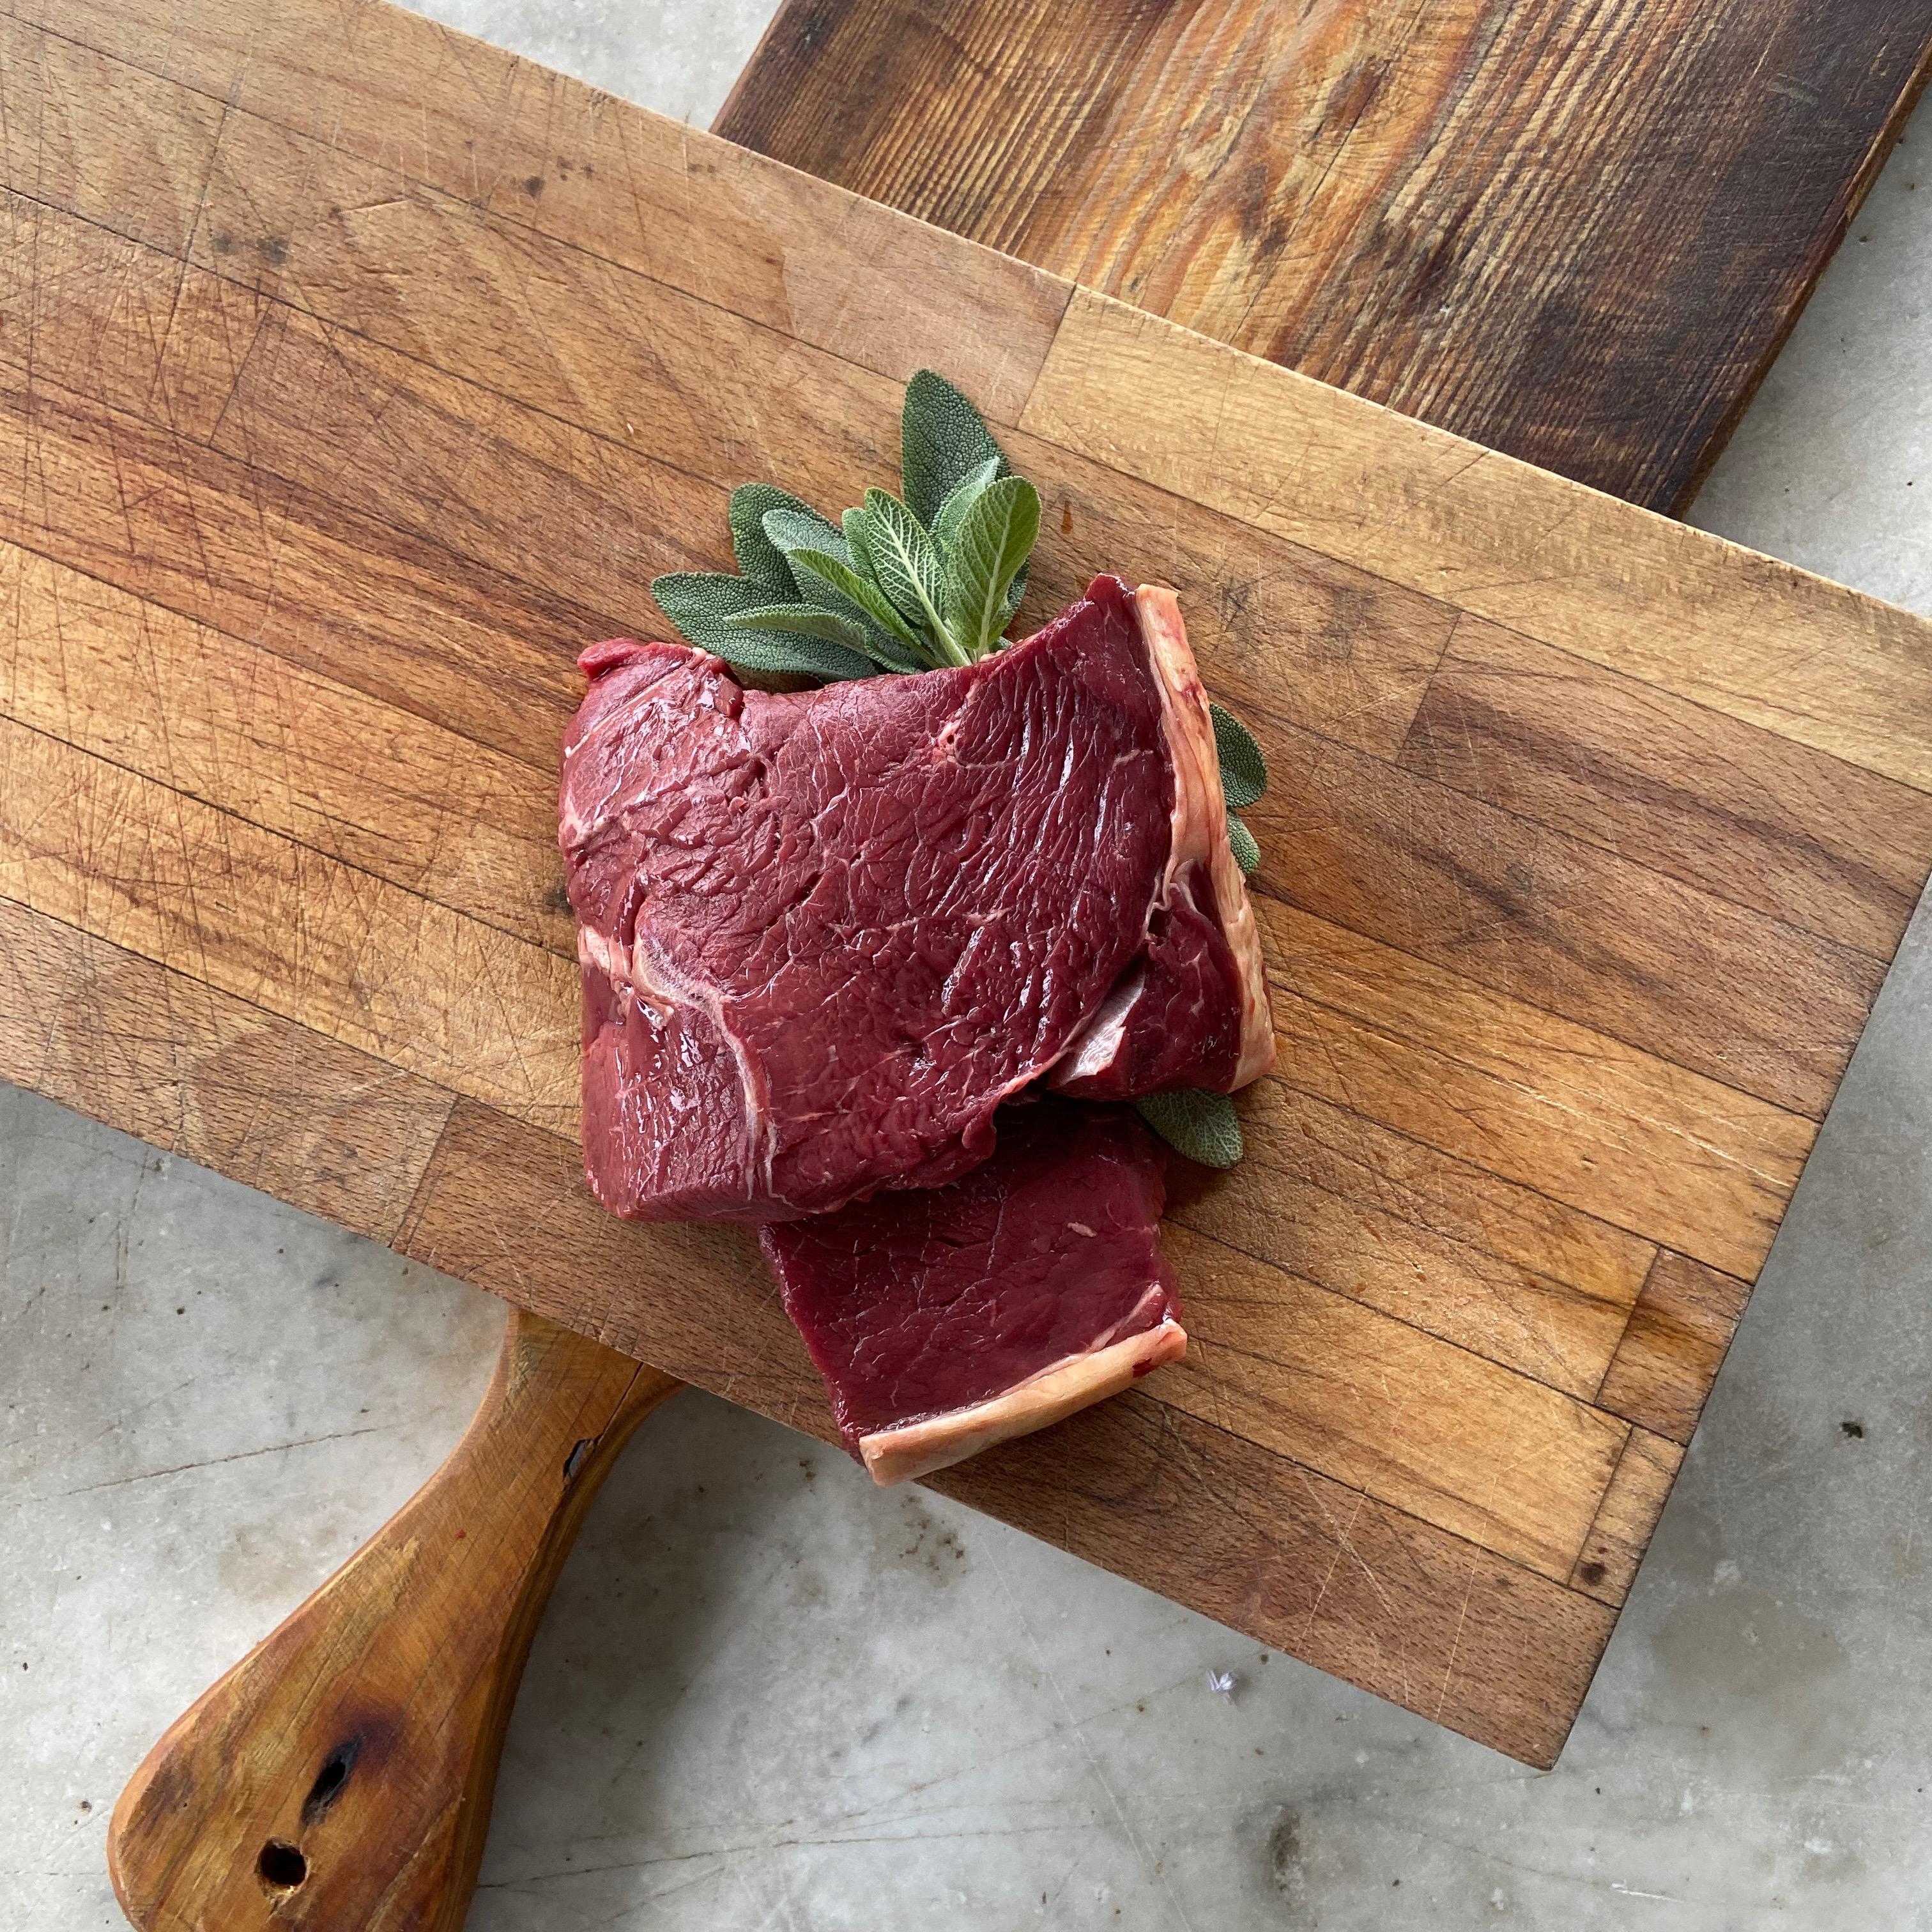 100% grass fed rump steak, made from Longhorn beef